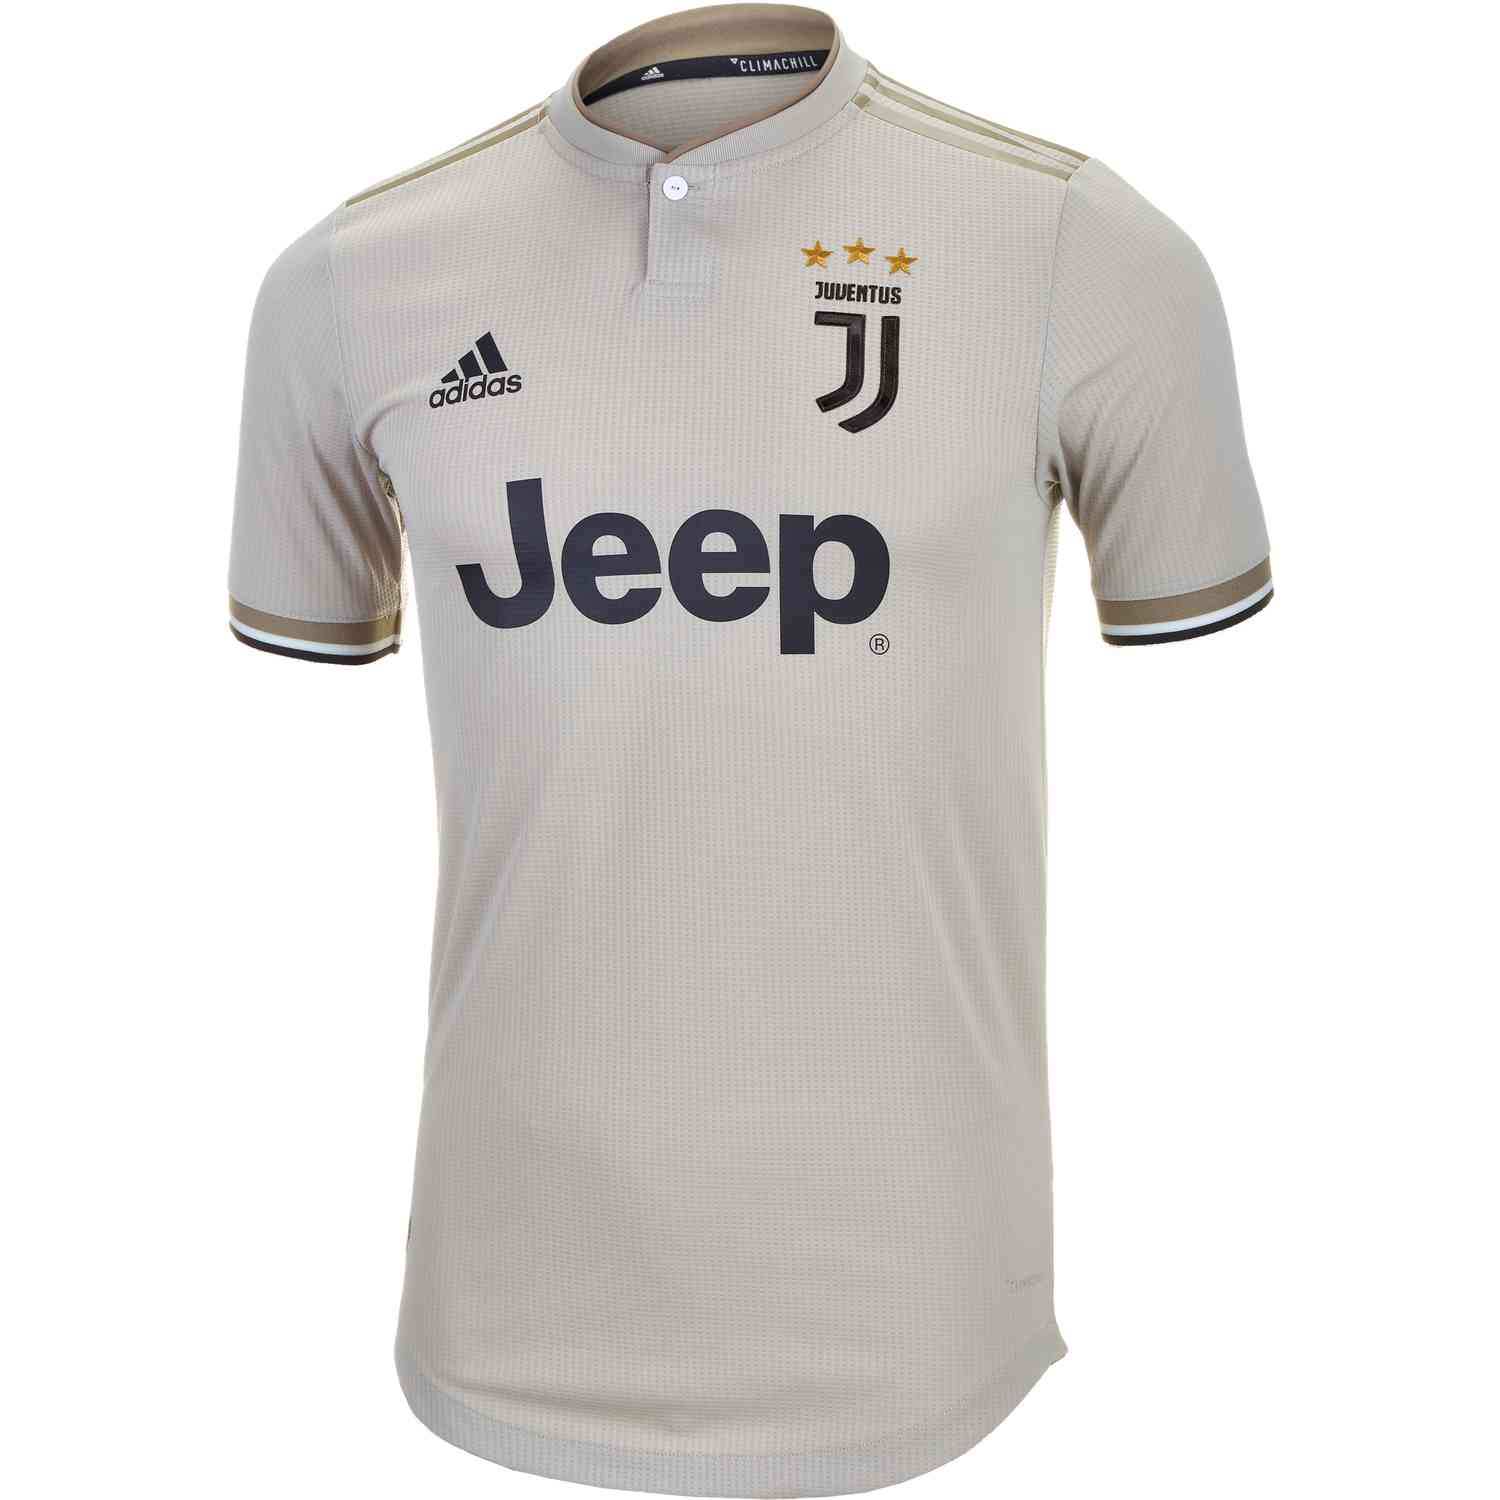 adidas Juventus Away Authentic Jersey 